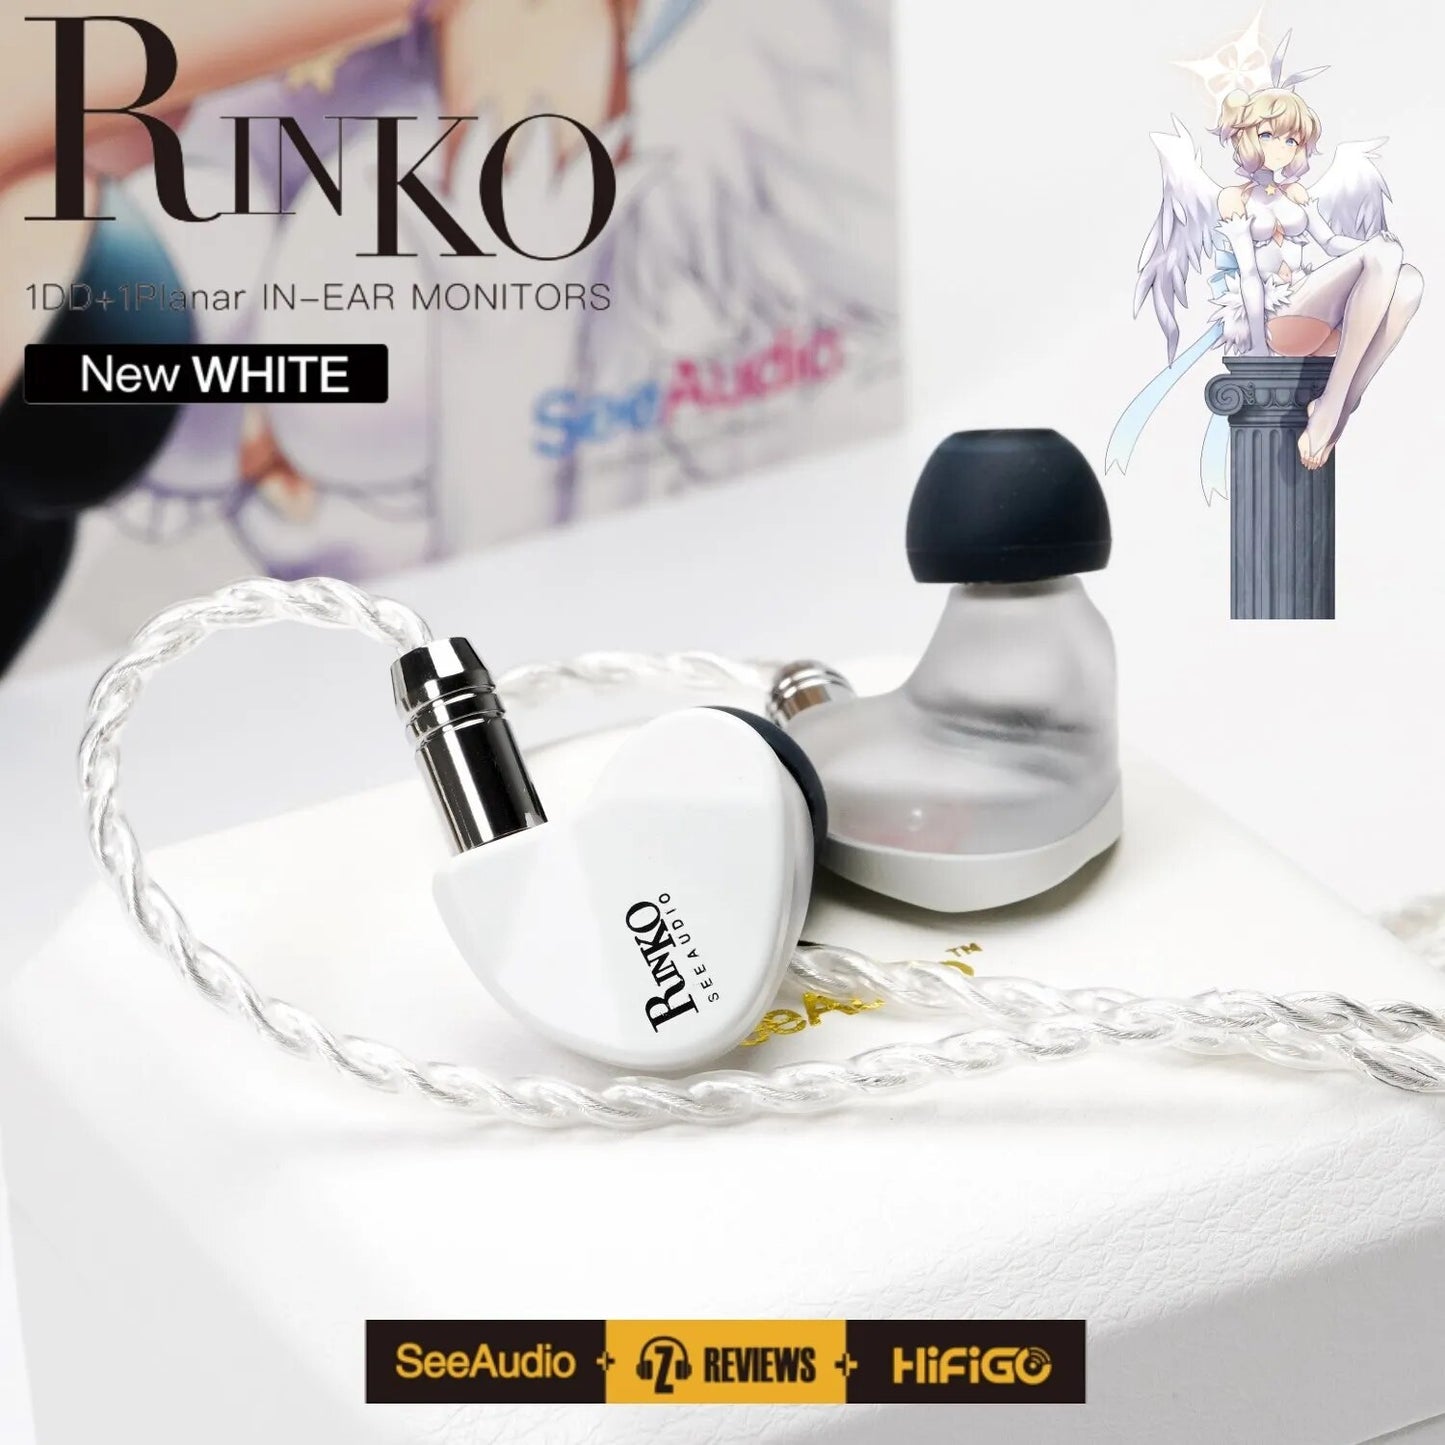 SeeAudio x Z Review White Rinko Hybrid Earphone 1DD+1Planar In-ear Monitors